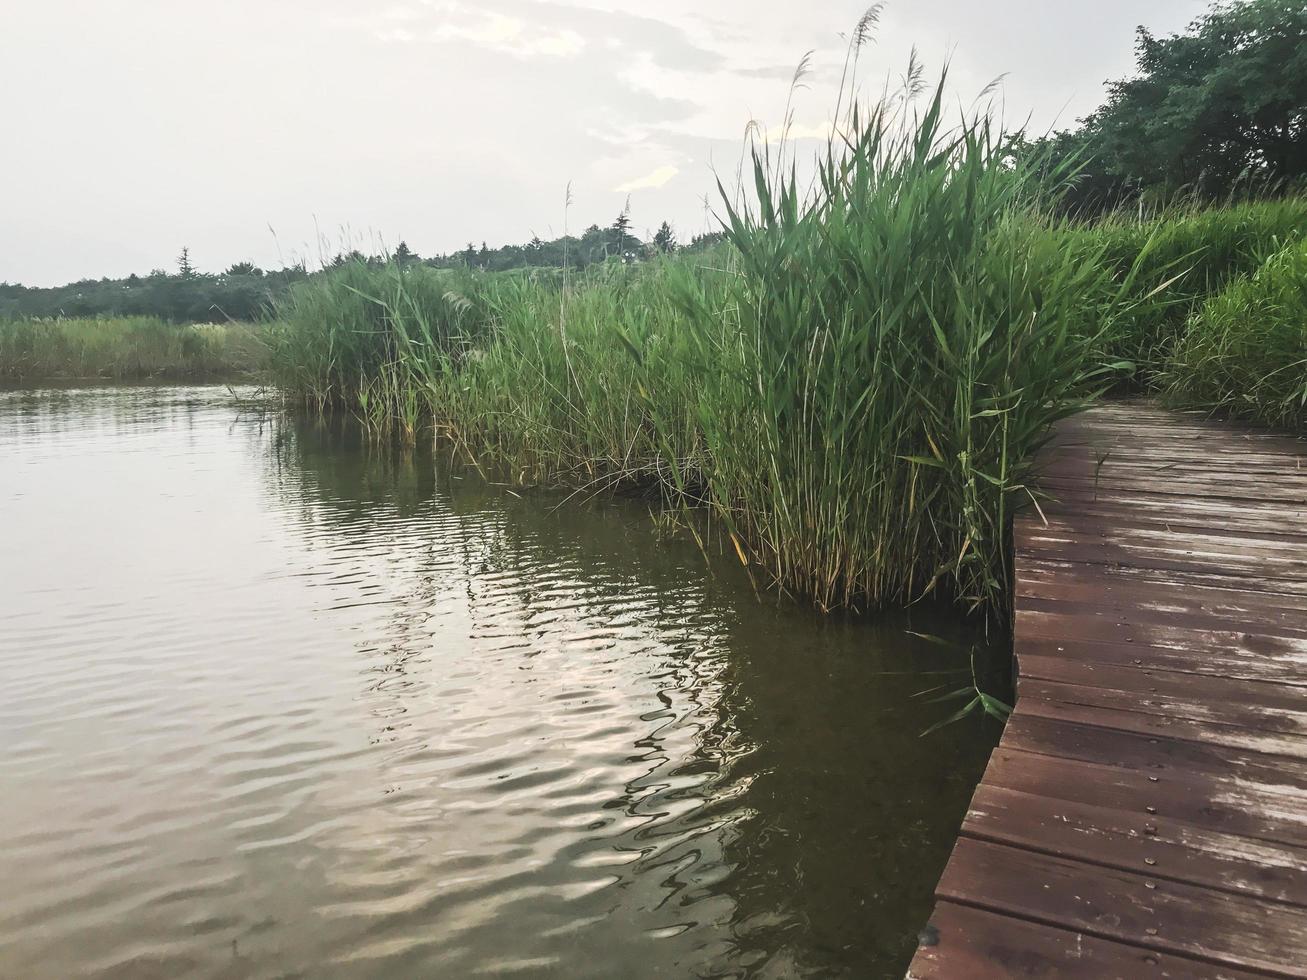 la jetée en bois recouverte de roseaux sur le lac de sokcho city, corée du sud photo